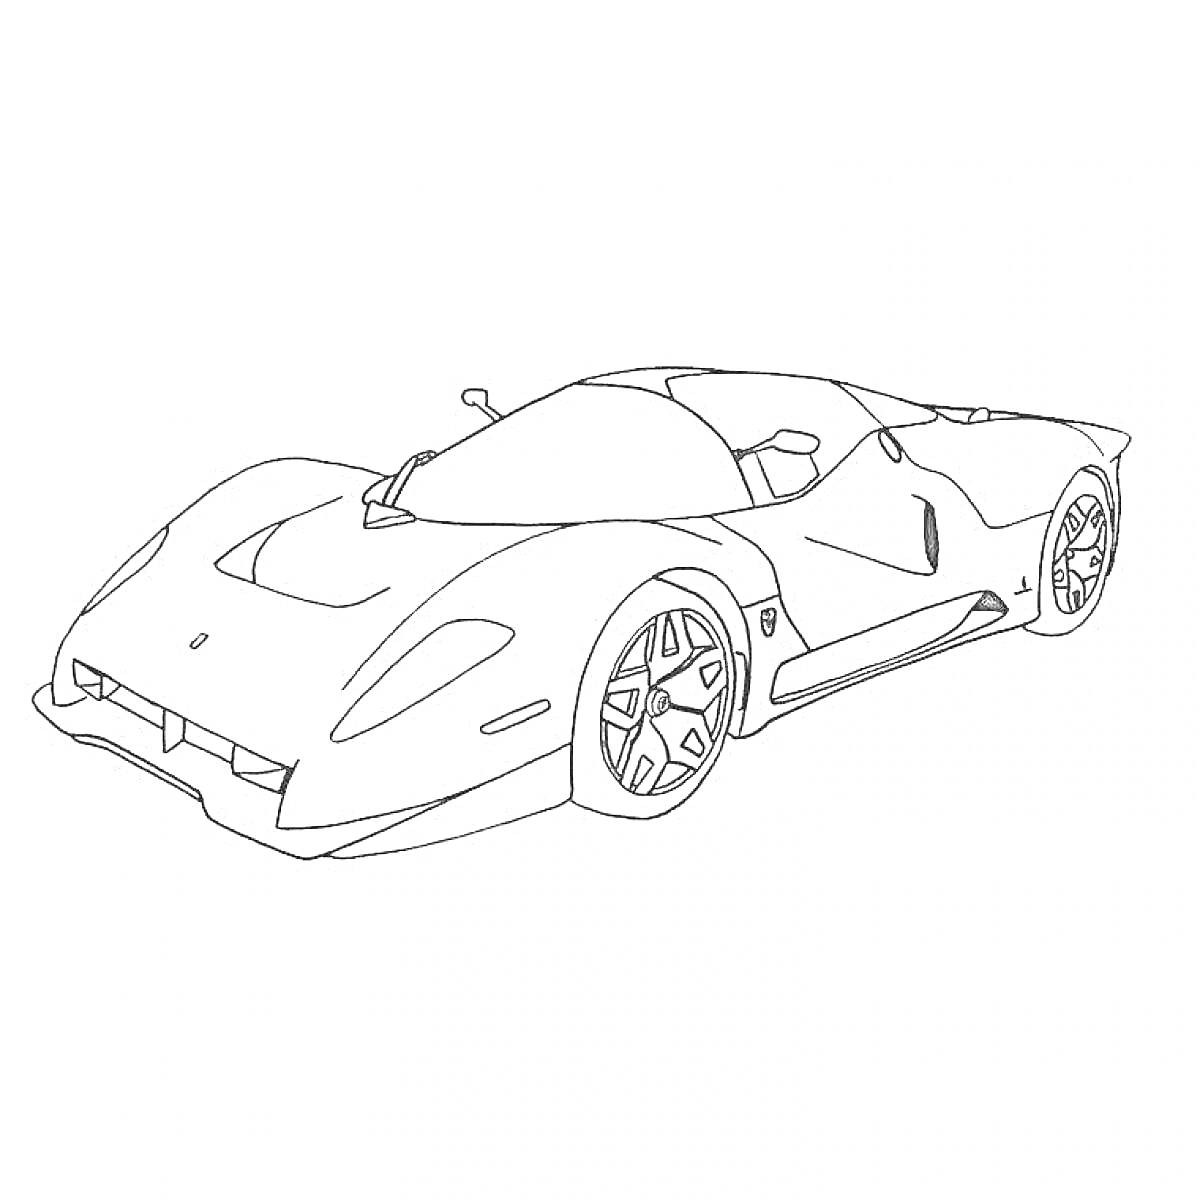 Раскраска Спортивный автомобиль Marussia с аэродинамическими линиями и большими колёсами